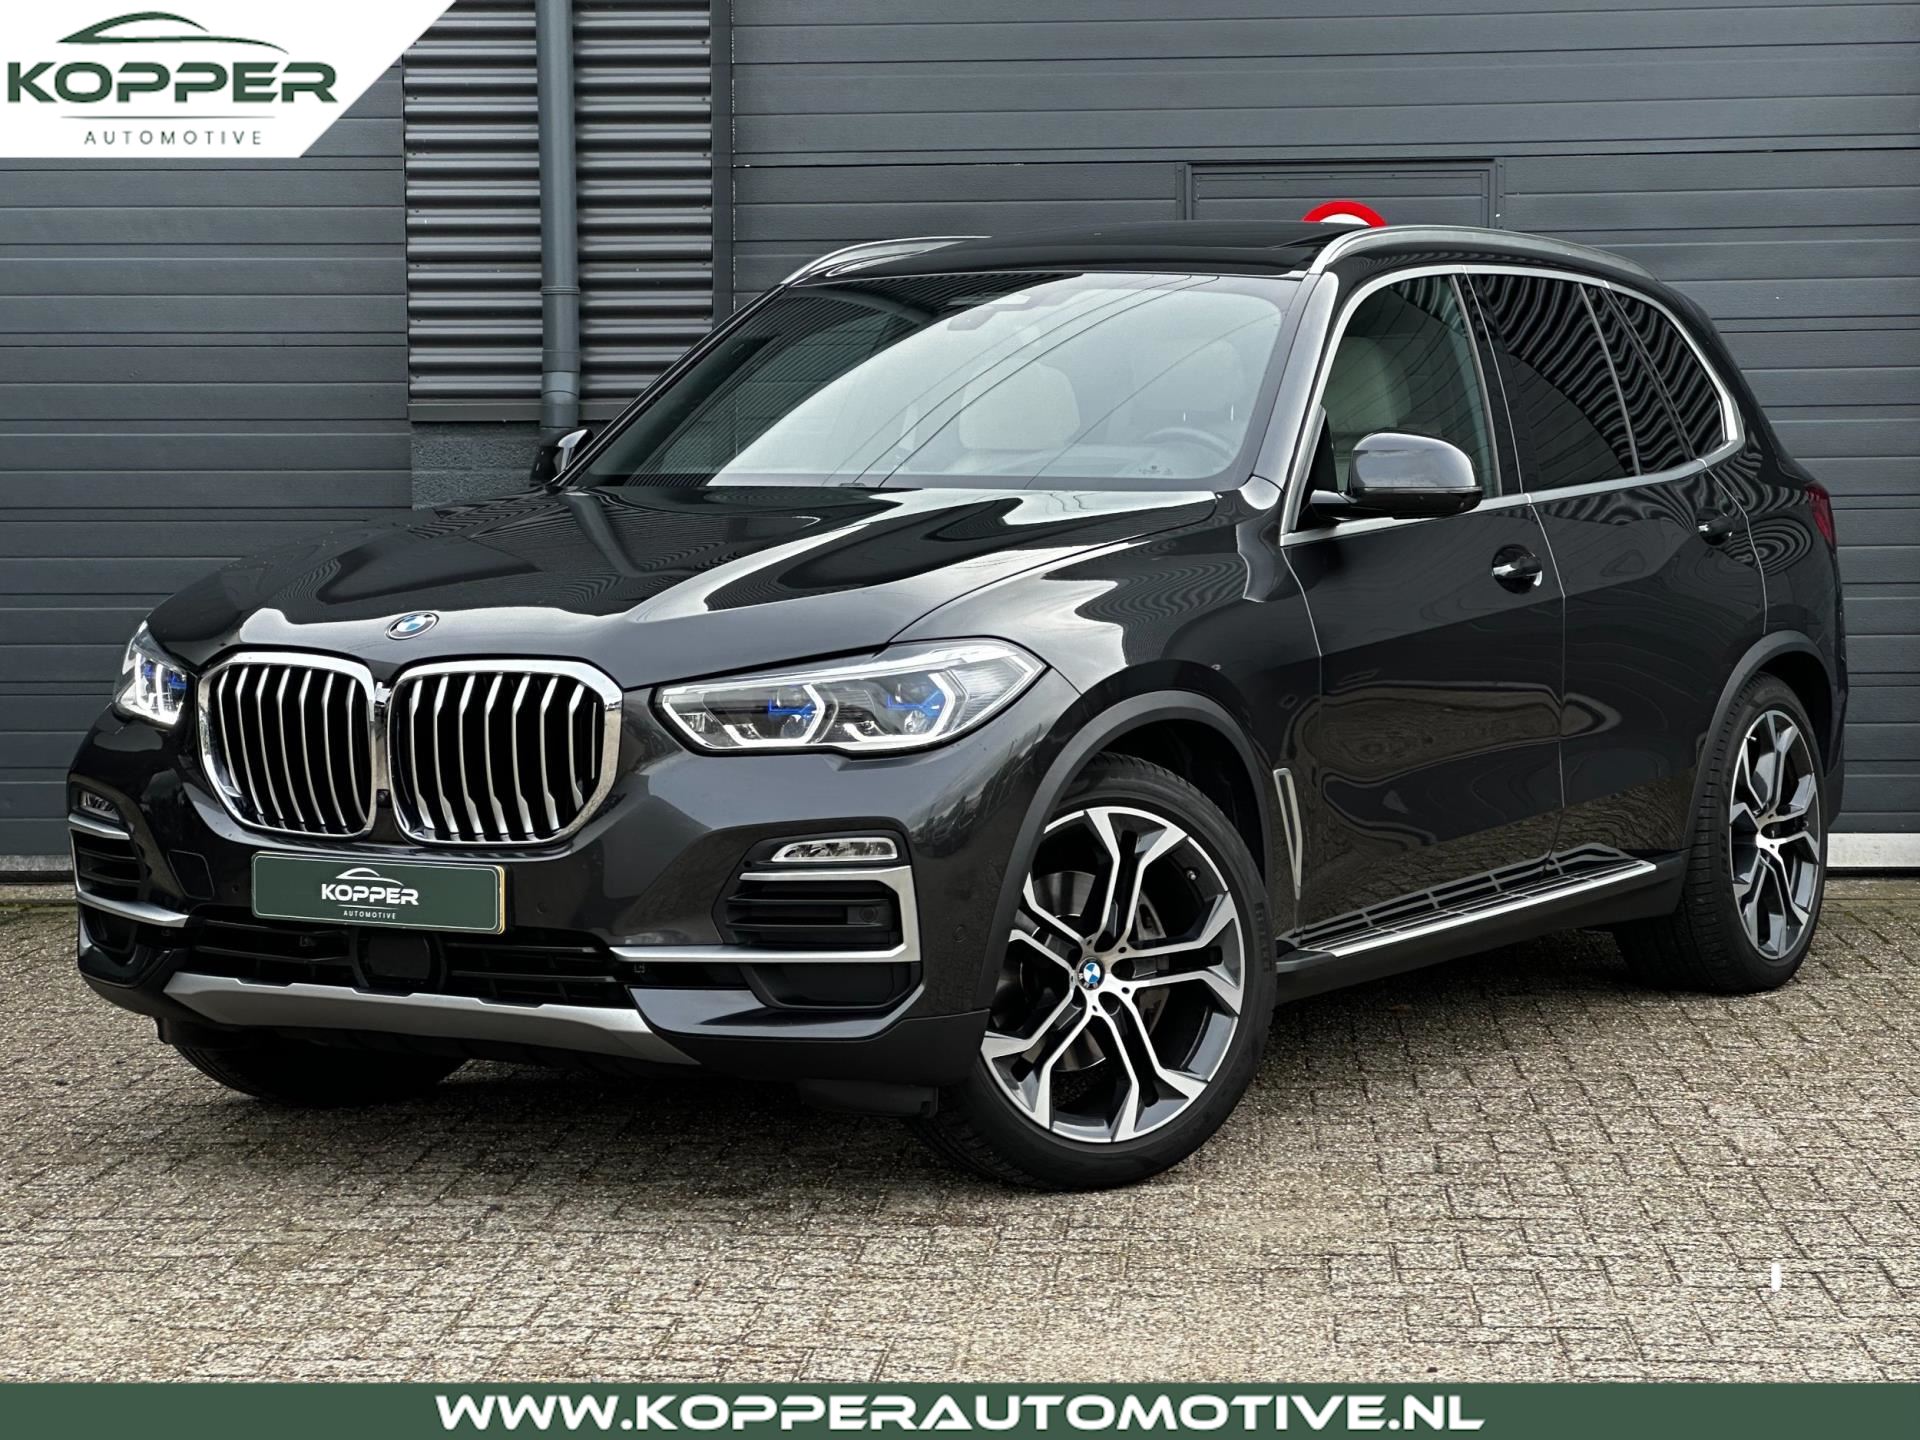 BMW X5 occasion - Kopper Automotive B.V.